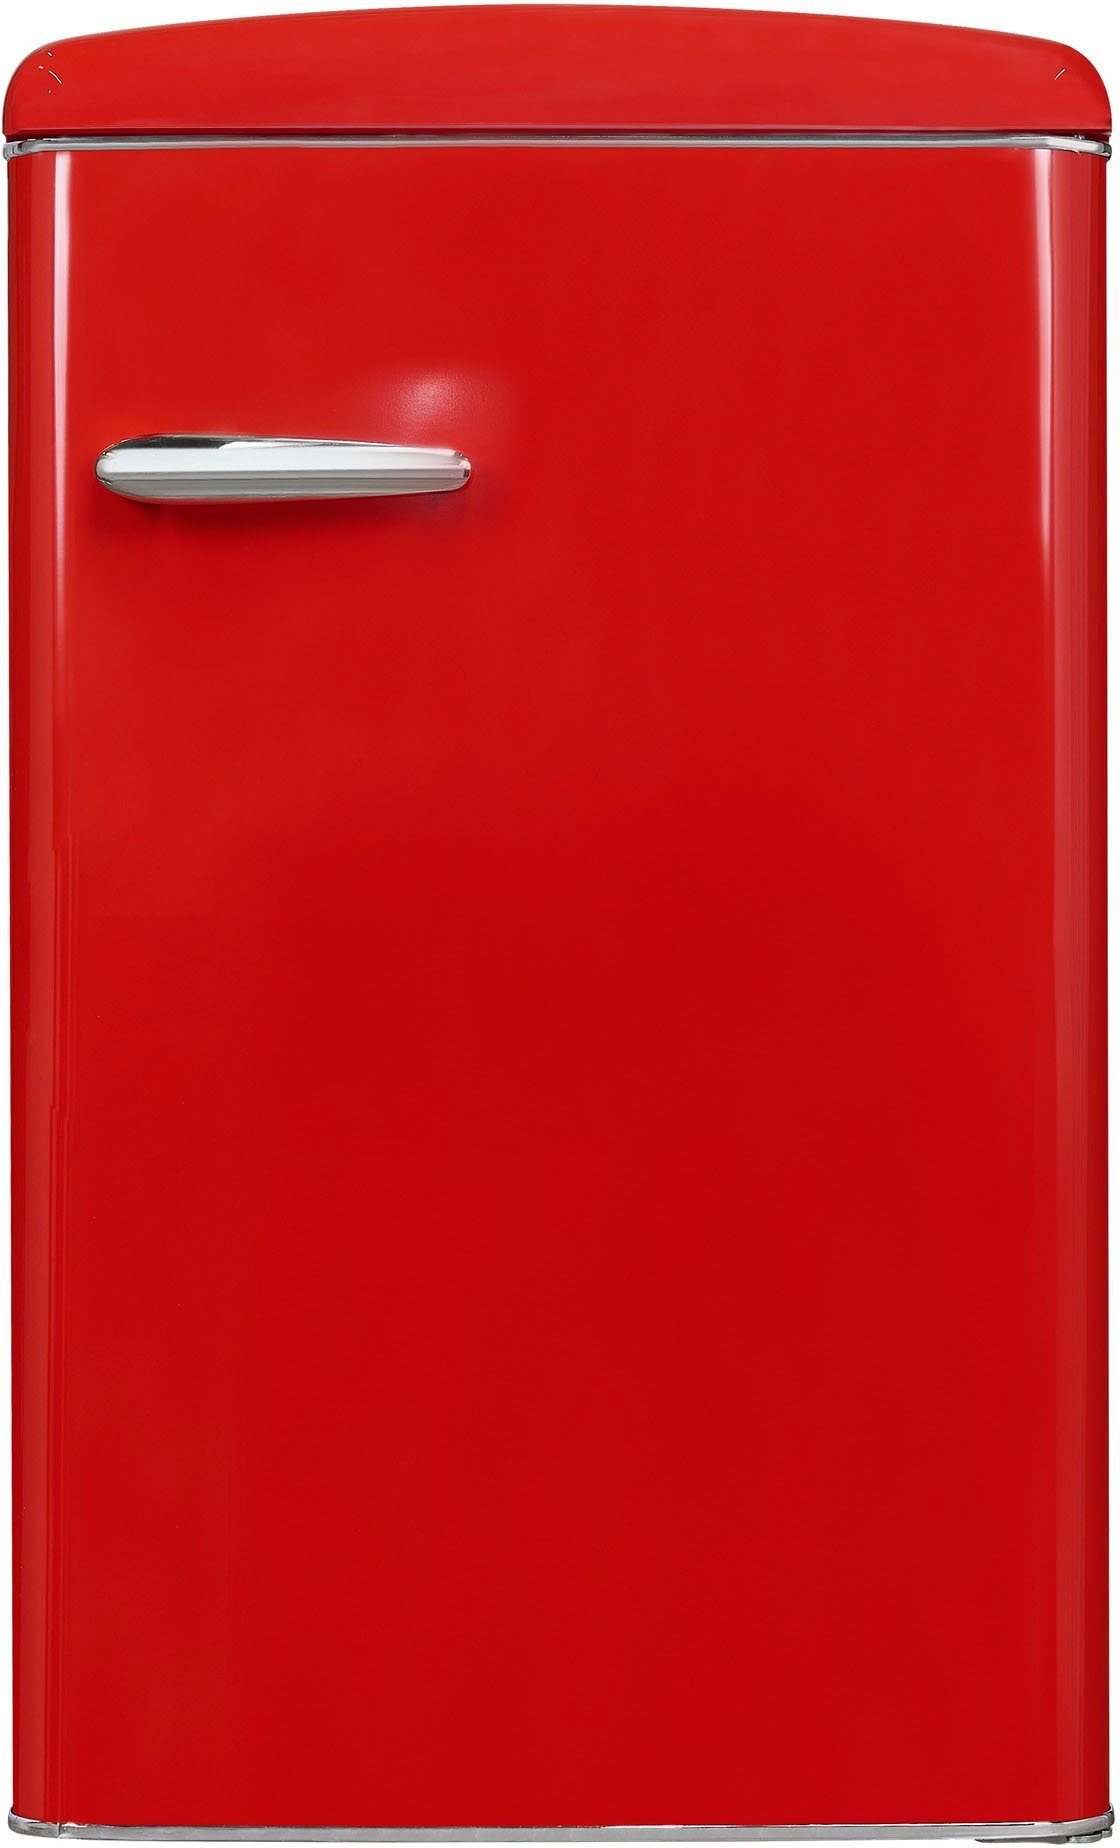 cm 55 RKS120-V-H-160F breit Kühlschrank exquisit rot, hoch, 89,5 cm